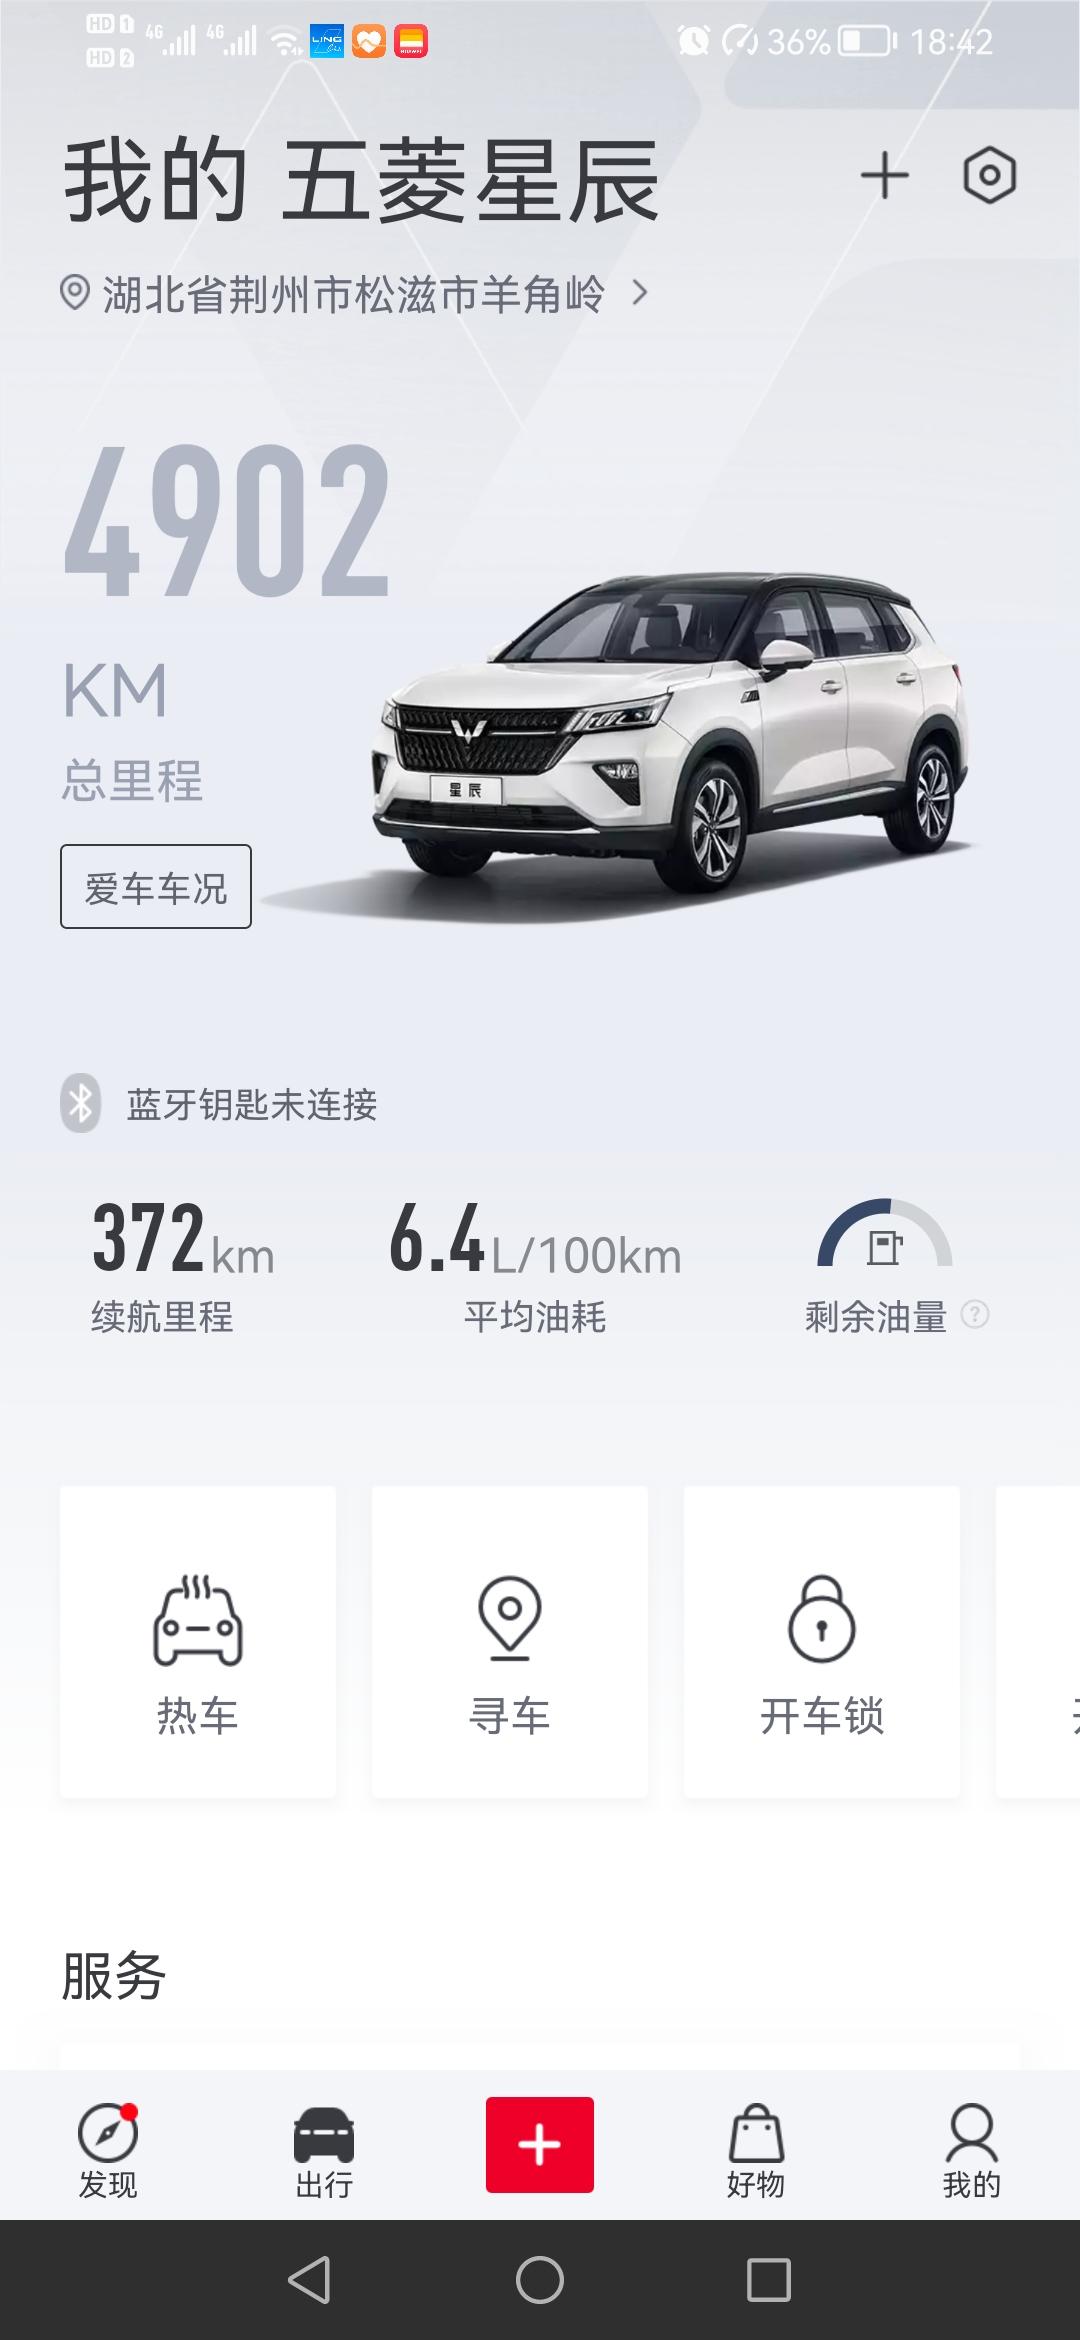 五菱五菱星辰 新车在广州买的，快5000KM了，开到广州去就将近6000KM了。去广州之前要不要去做个保养啊？但是首保在